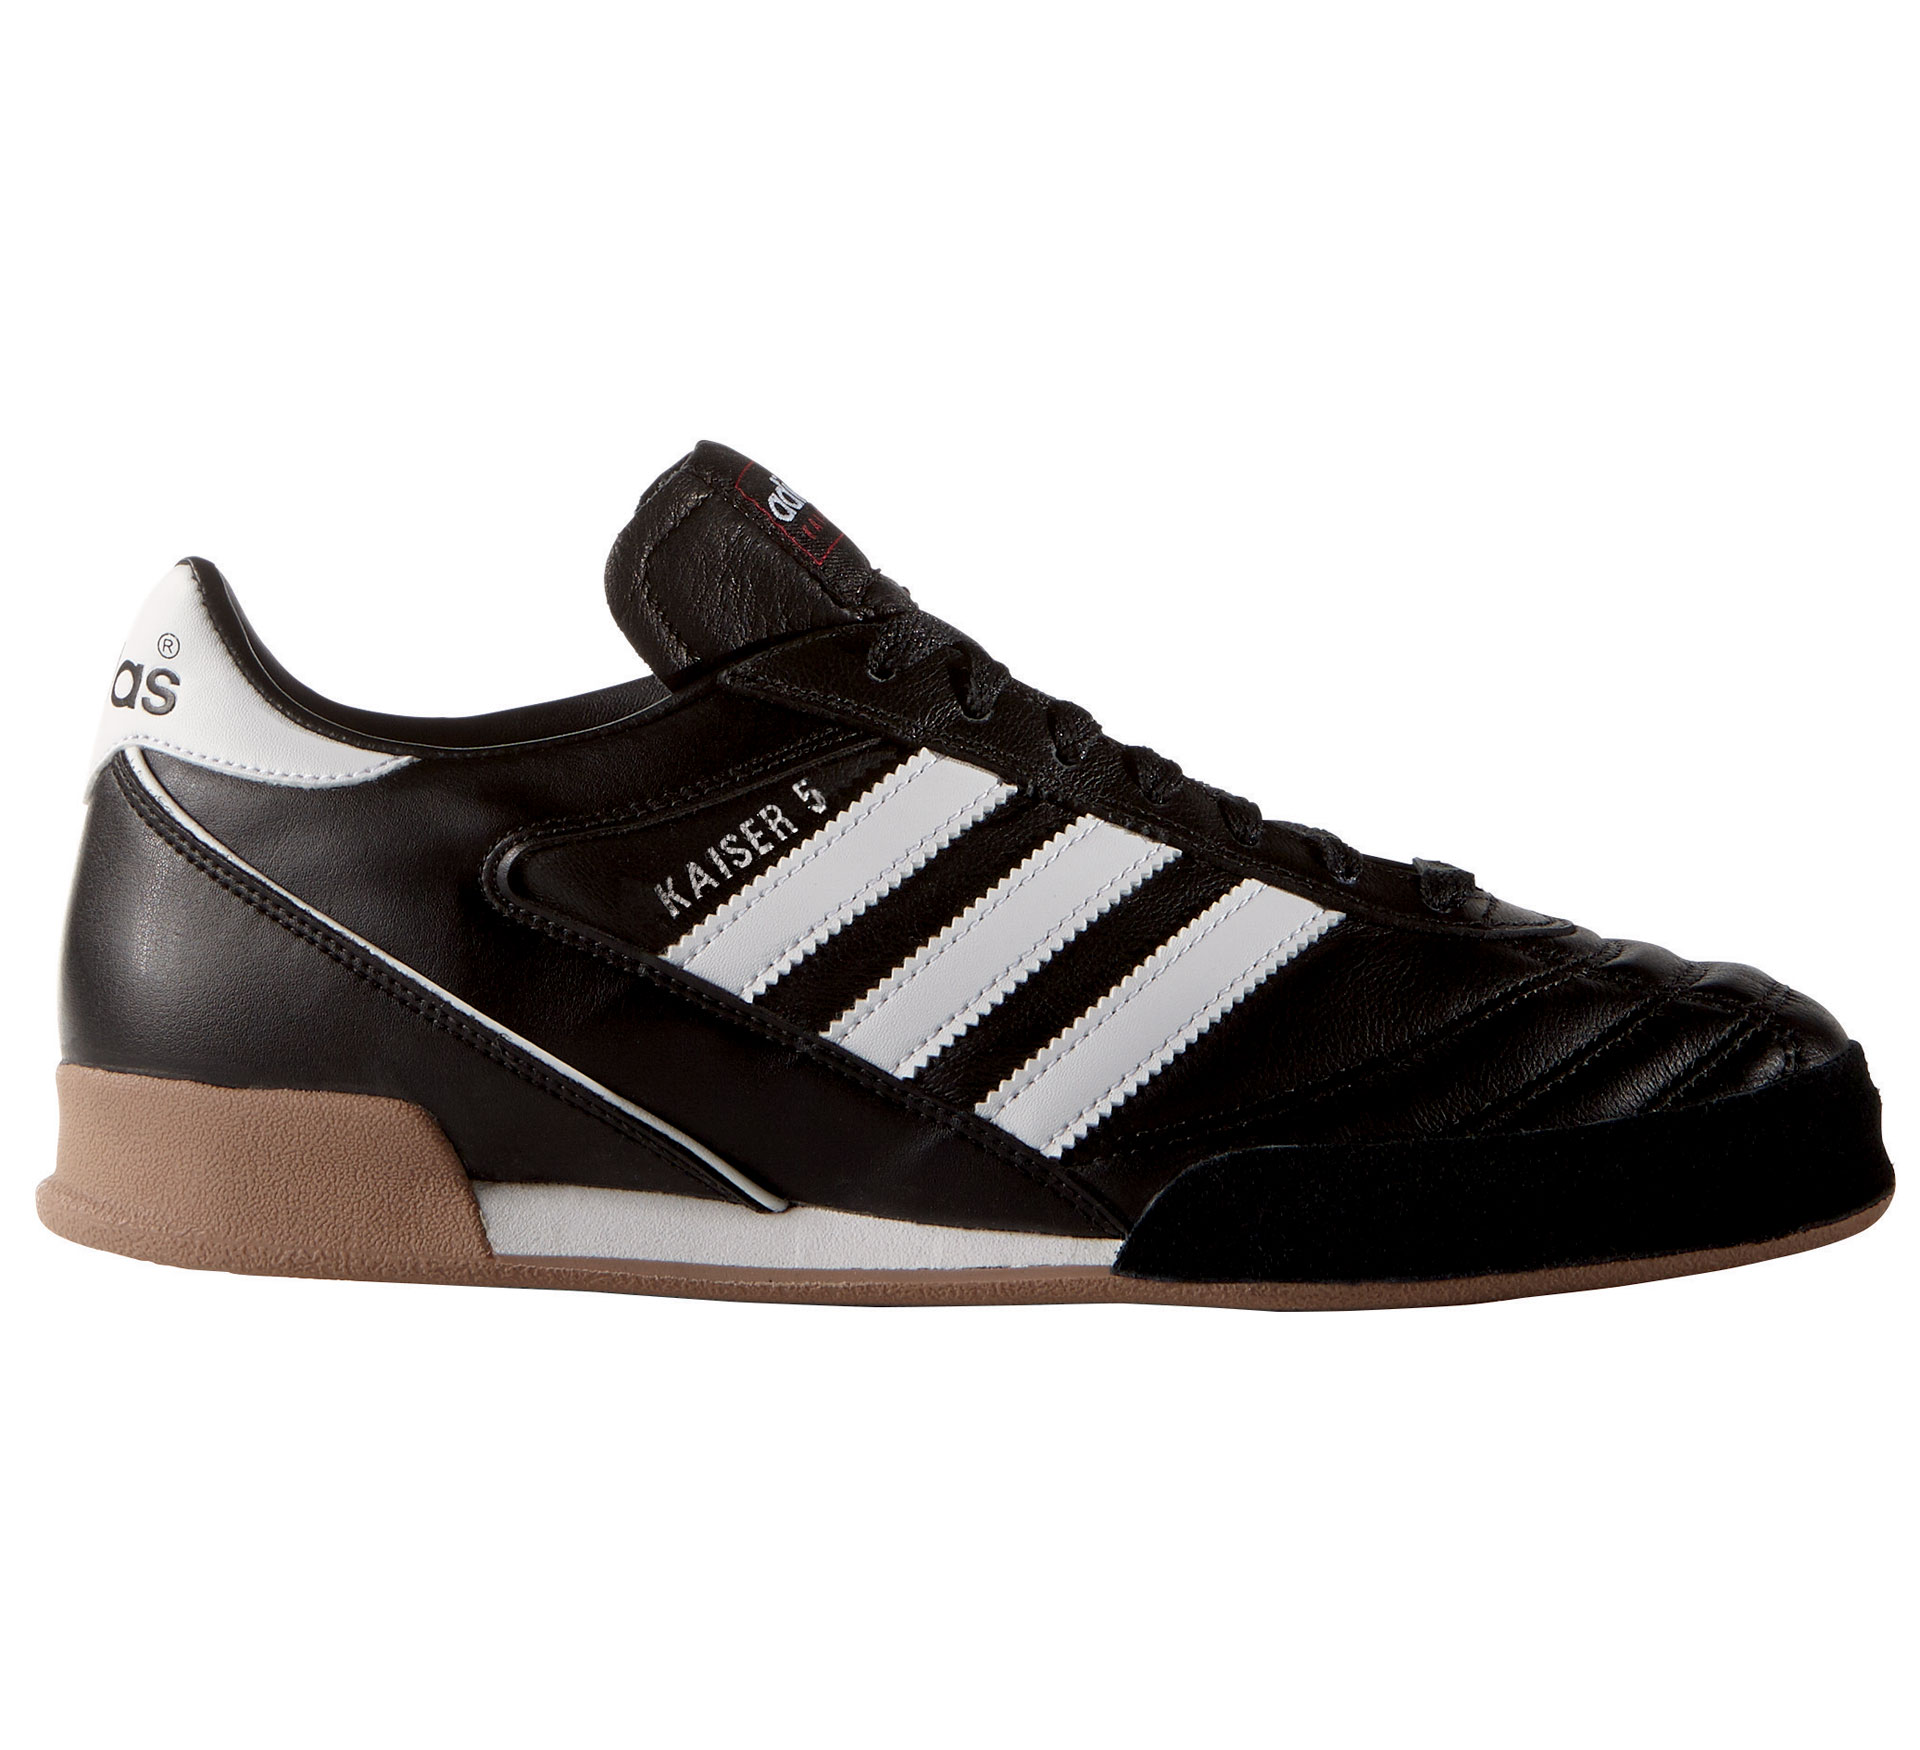 Adidas Kaiser 5 Goal chaussure d'intérieur Homme